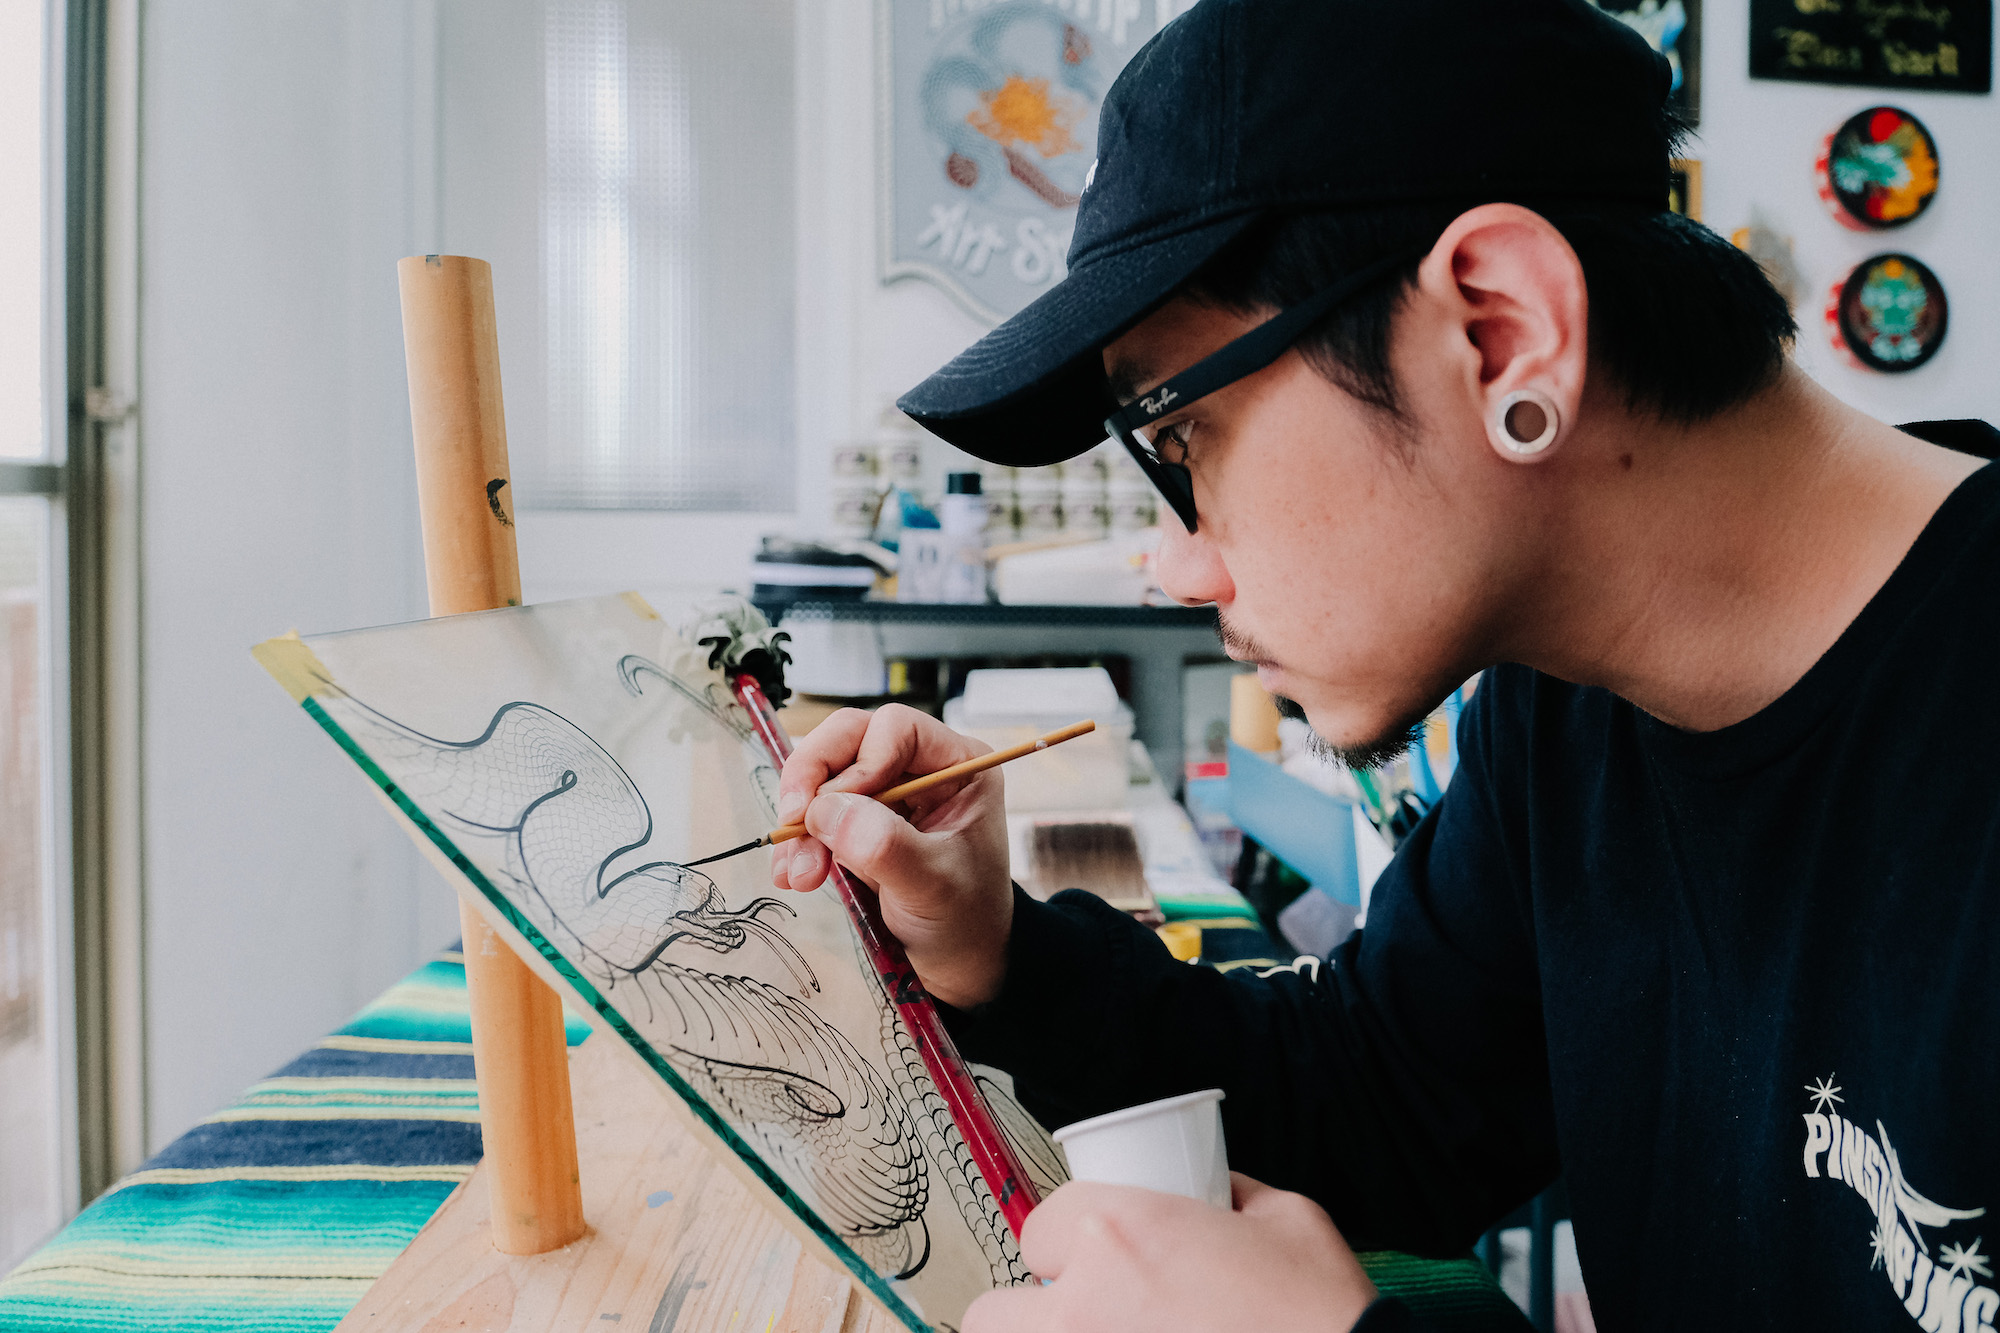 [職人] 台灣最潮看板手繪師張家榮 用貼金箔、手寫字、油漆彩繪與台客幽默展現個人風格